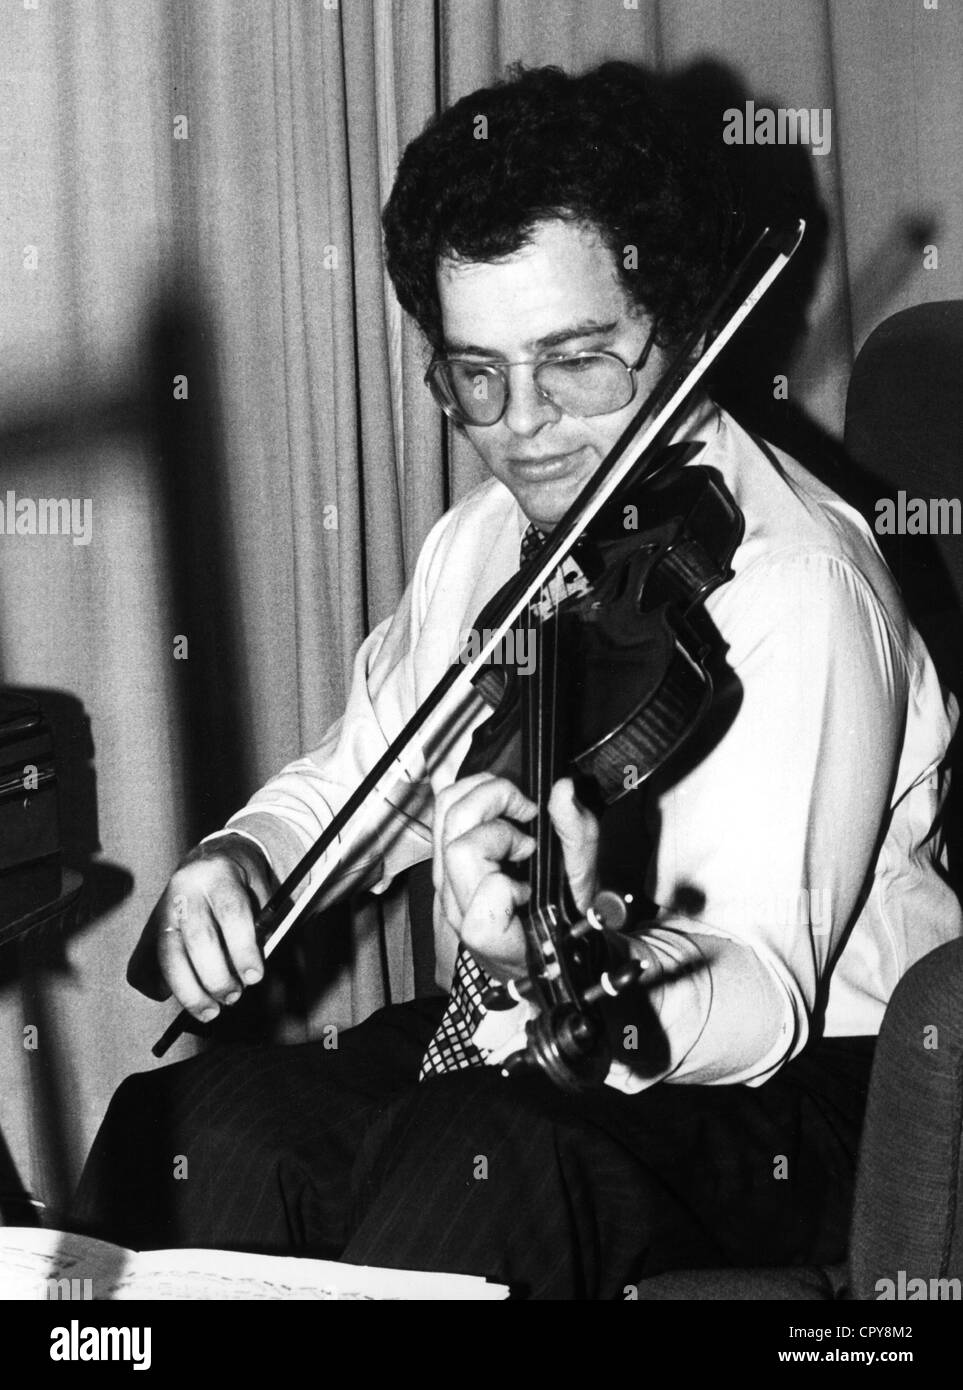 Perlmann, Itzhak, 31.1.1945, violoniste israélien, demi-longueur, violon  Photo Stock - Alamy